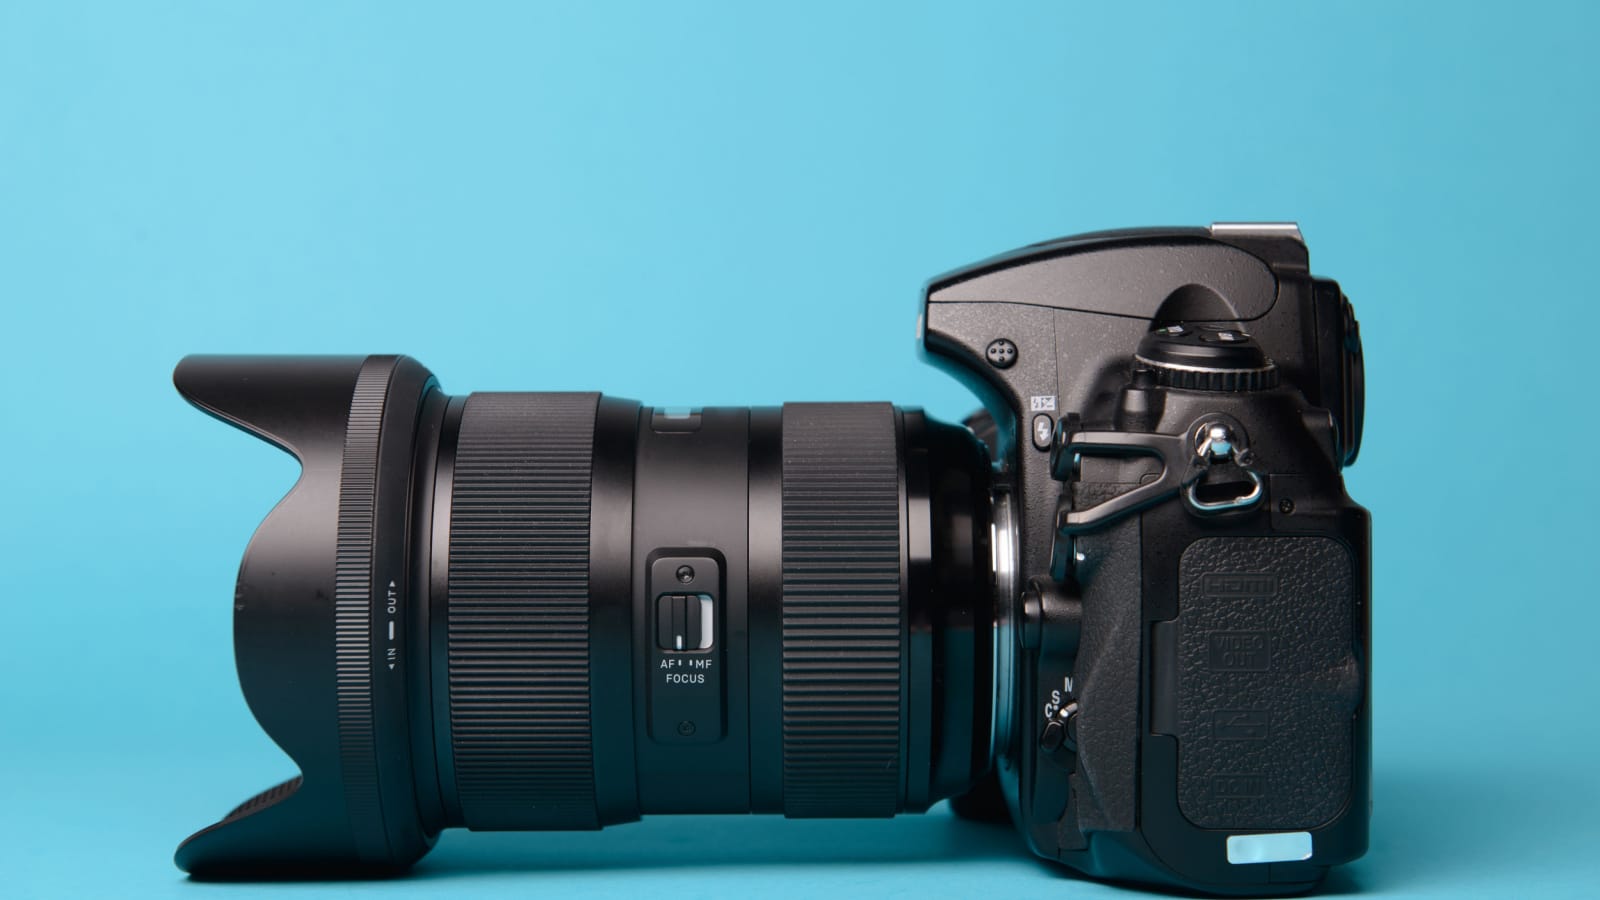 Professional modern DSLR camera against blue background